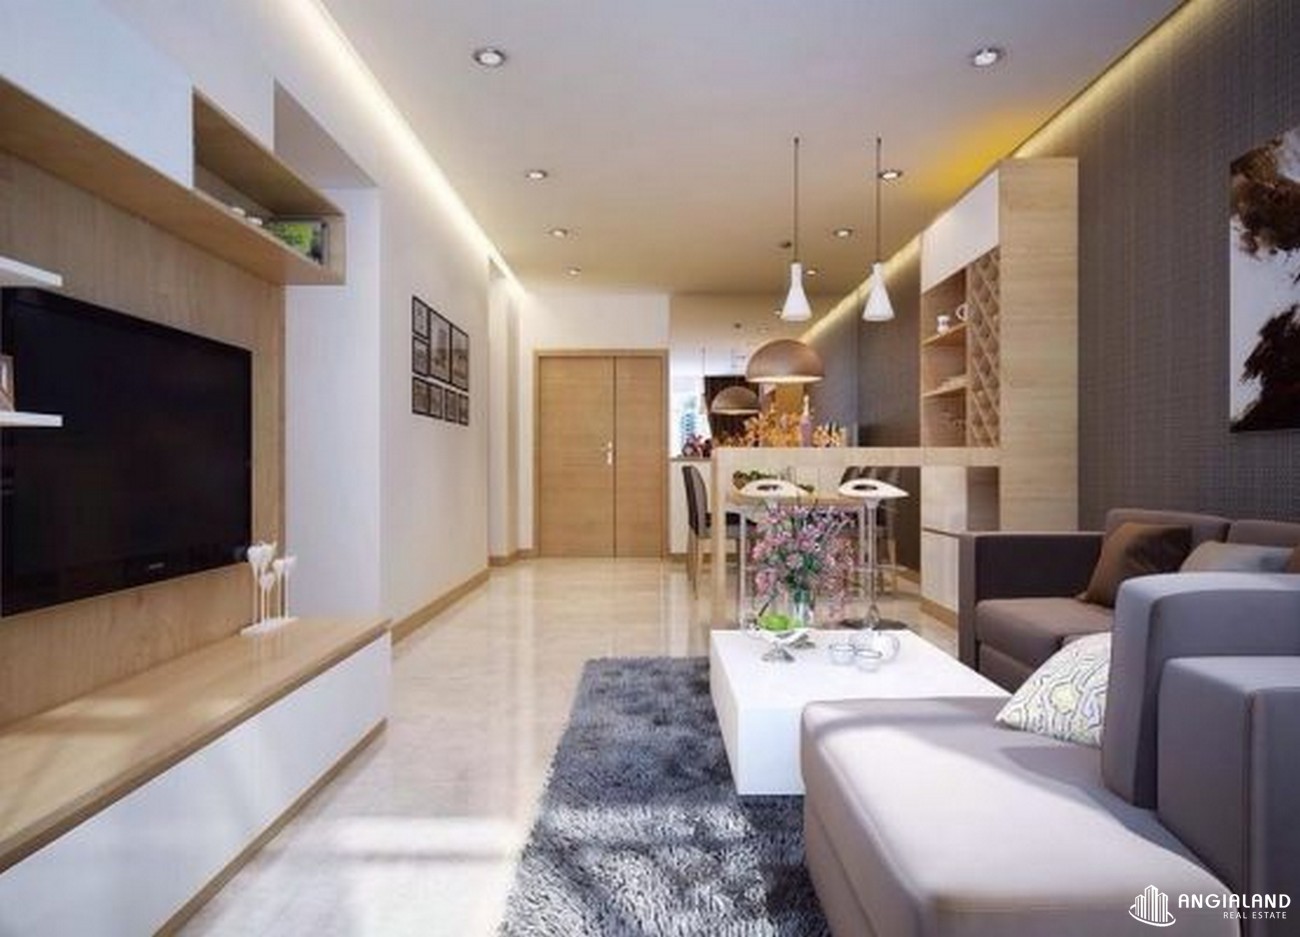 Nội thất dự án căn hộ condotel Grand World  Phú Quốc  Bãi Dài chủ đầu tư New Vision